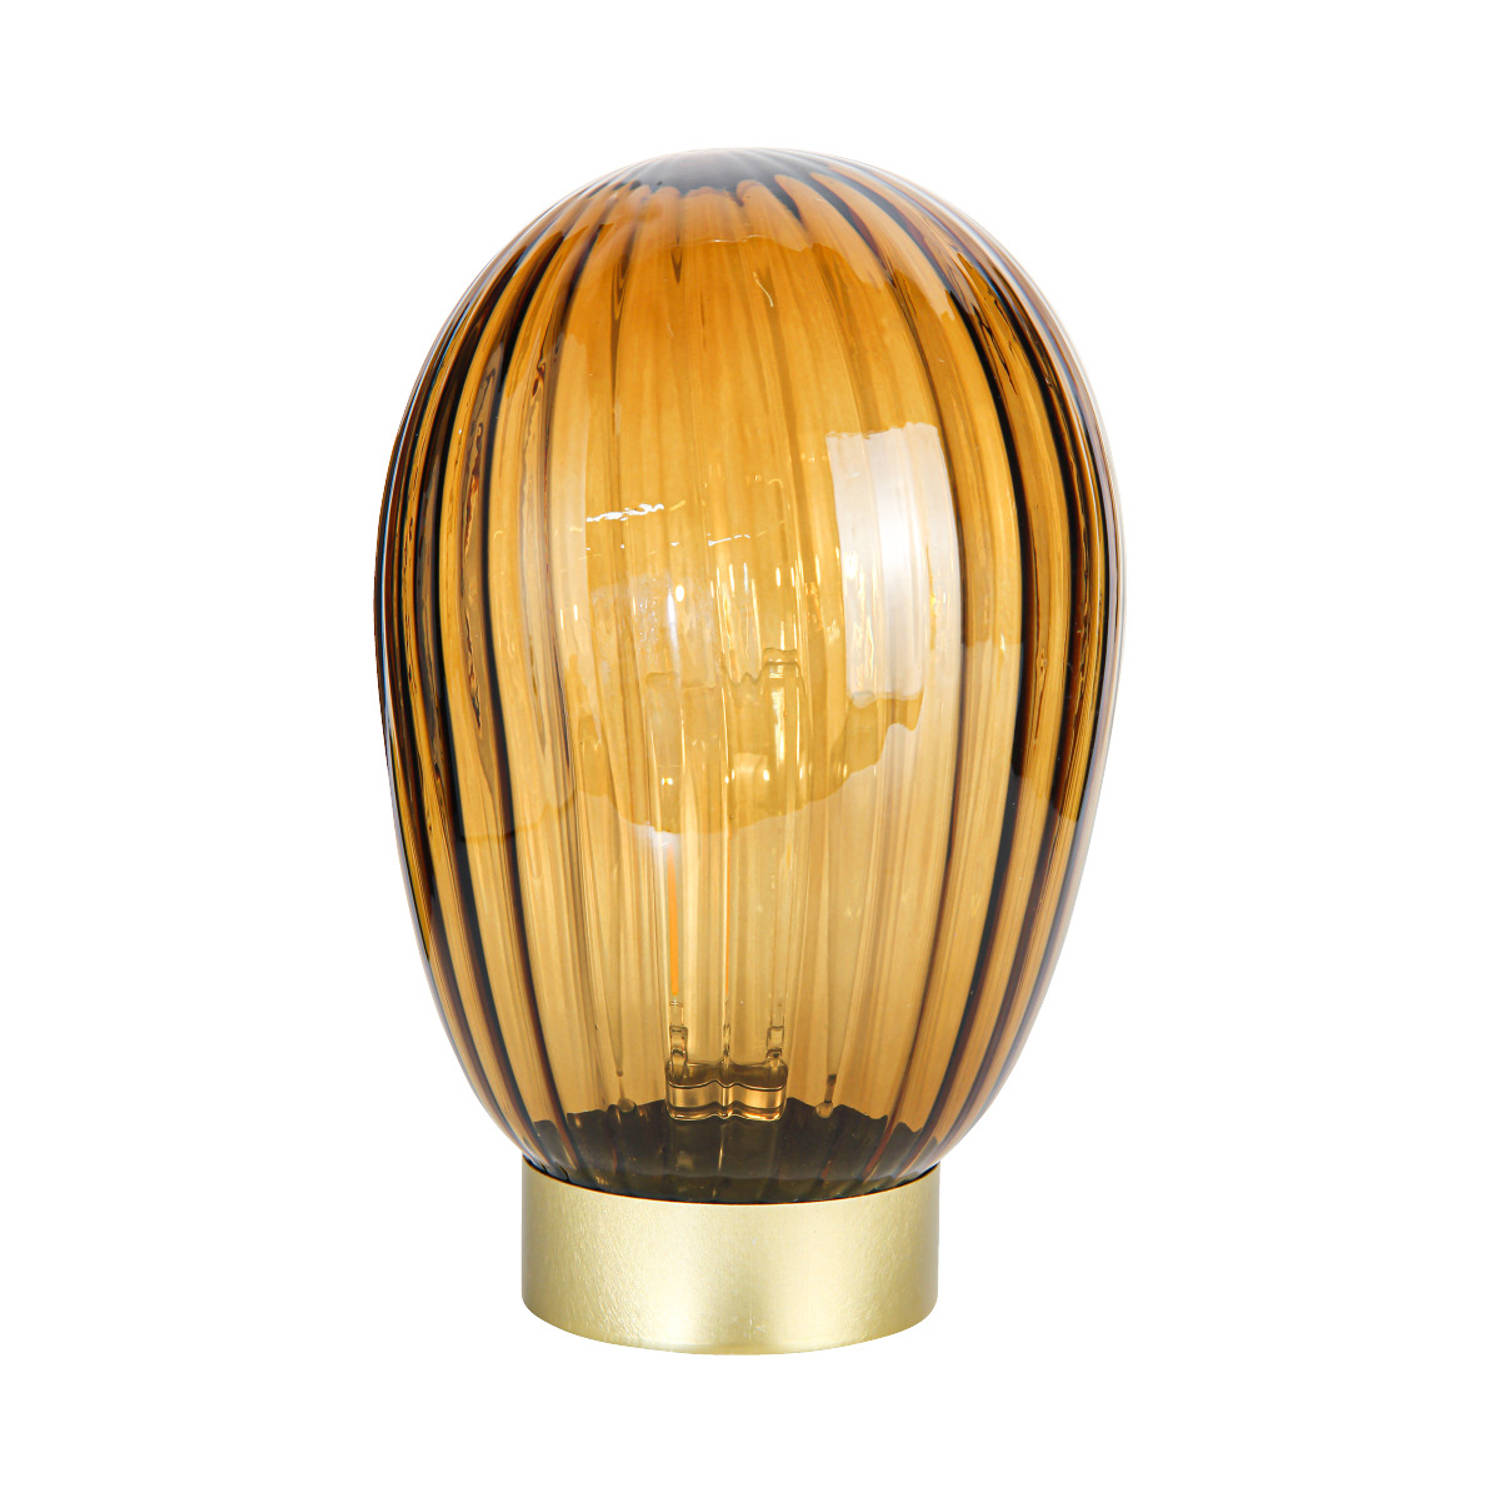 LED Tafellamp Amber Bruin – Goud – Werkt op batterijen (incl. lamp) – Ø14 X 23,5 CM